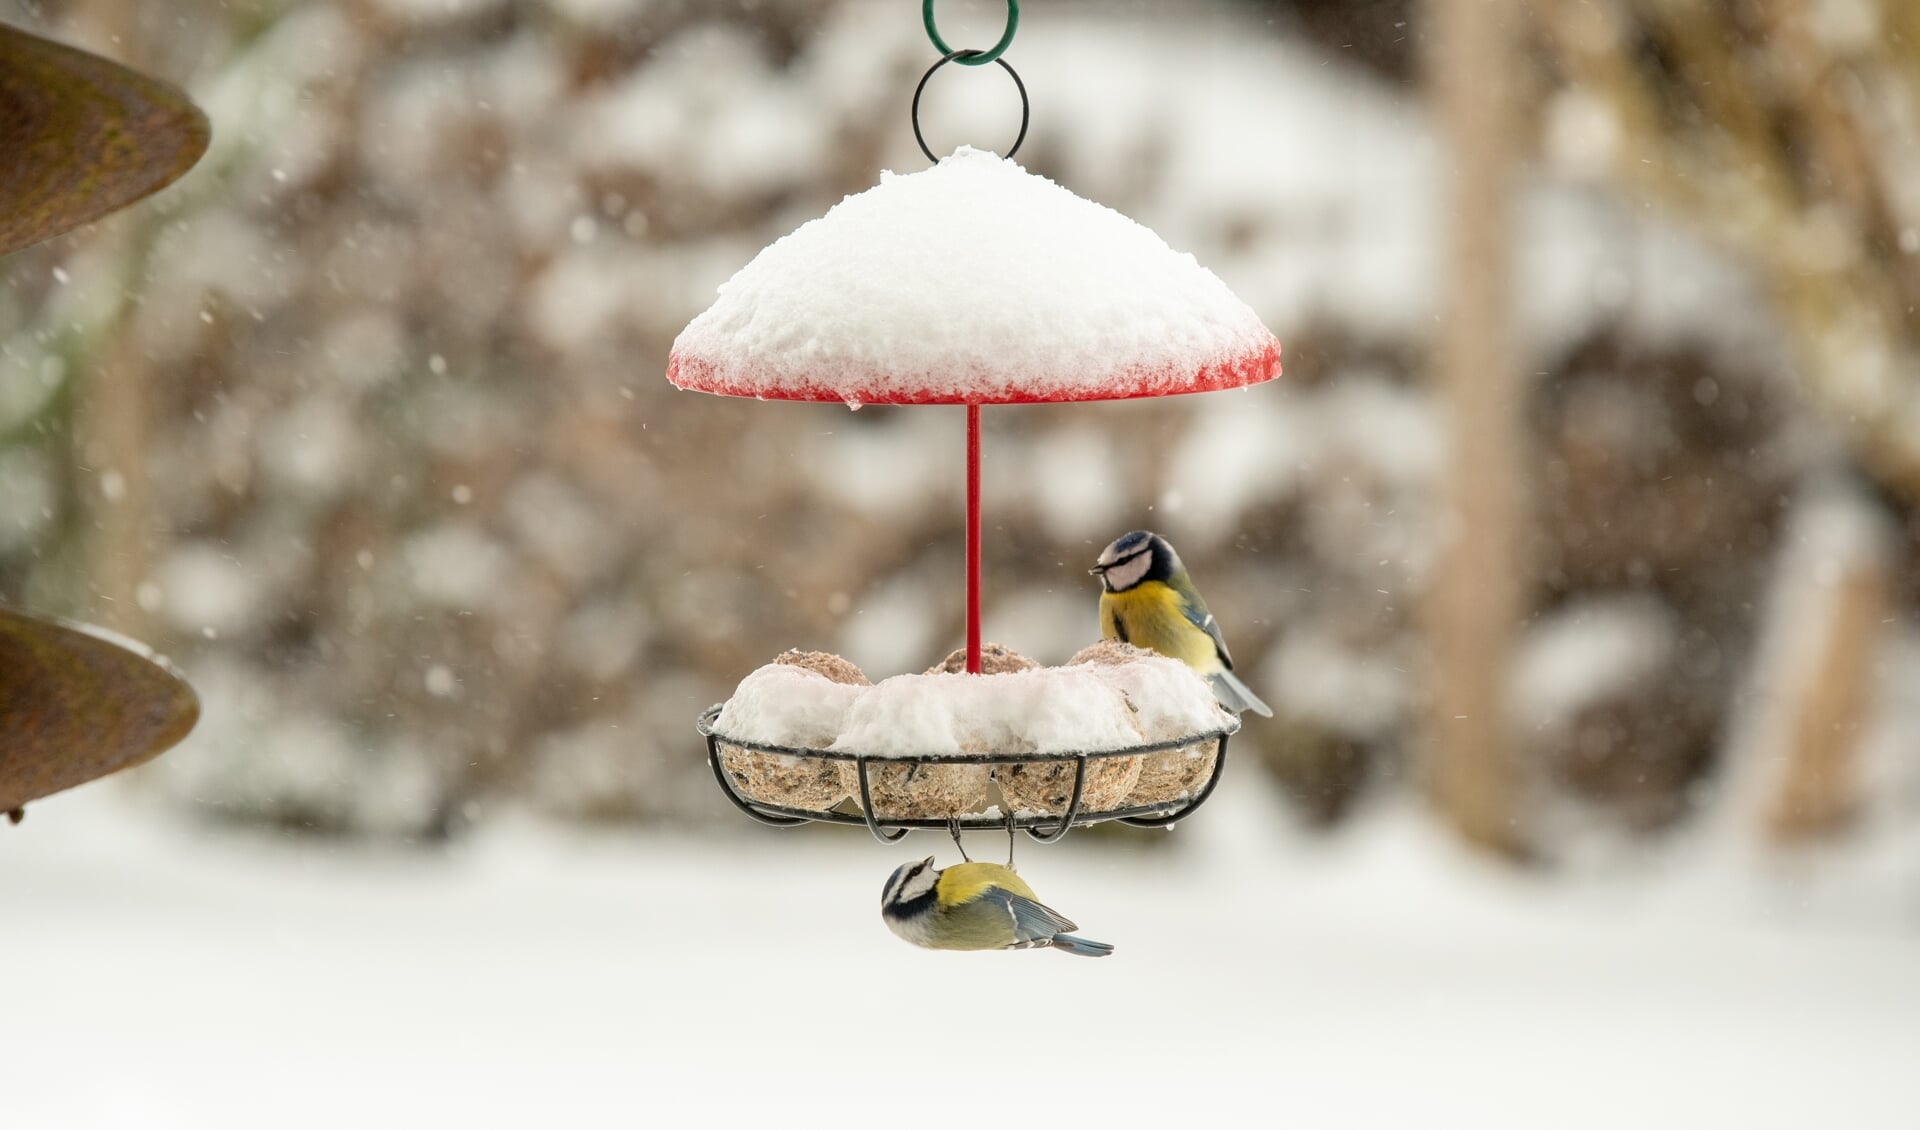 Vogels zijn je dankbaar voor wat extra hulp in barre wintertijden.